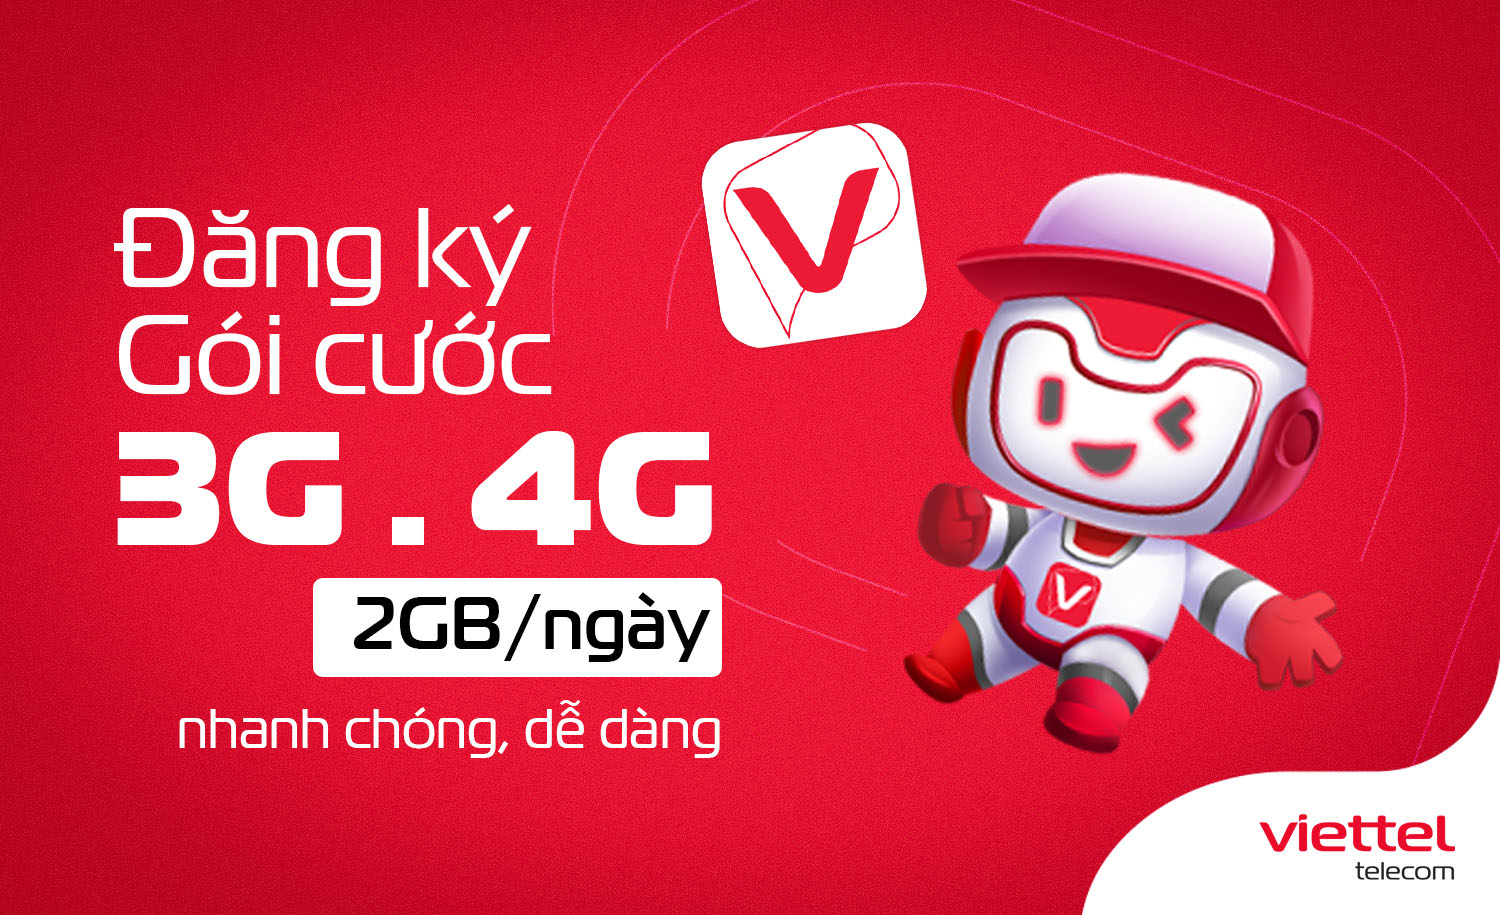 Hướng dẫn cách đăng ký gói cước data 3G/4G Viettel với 2GB/ngày nhanh nhất